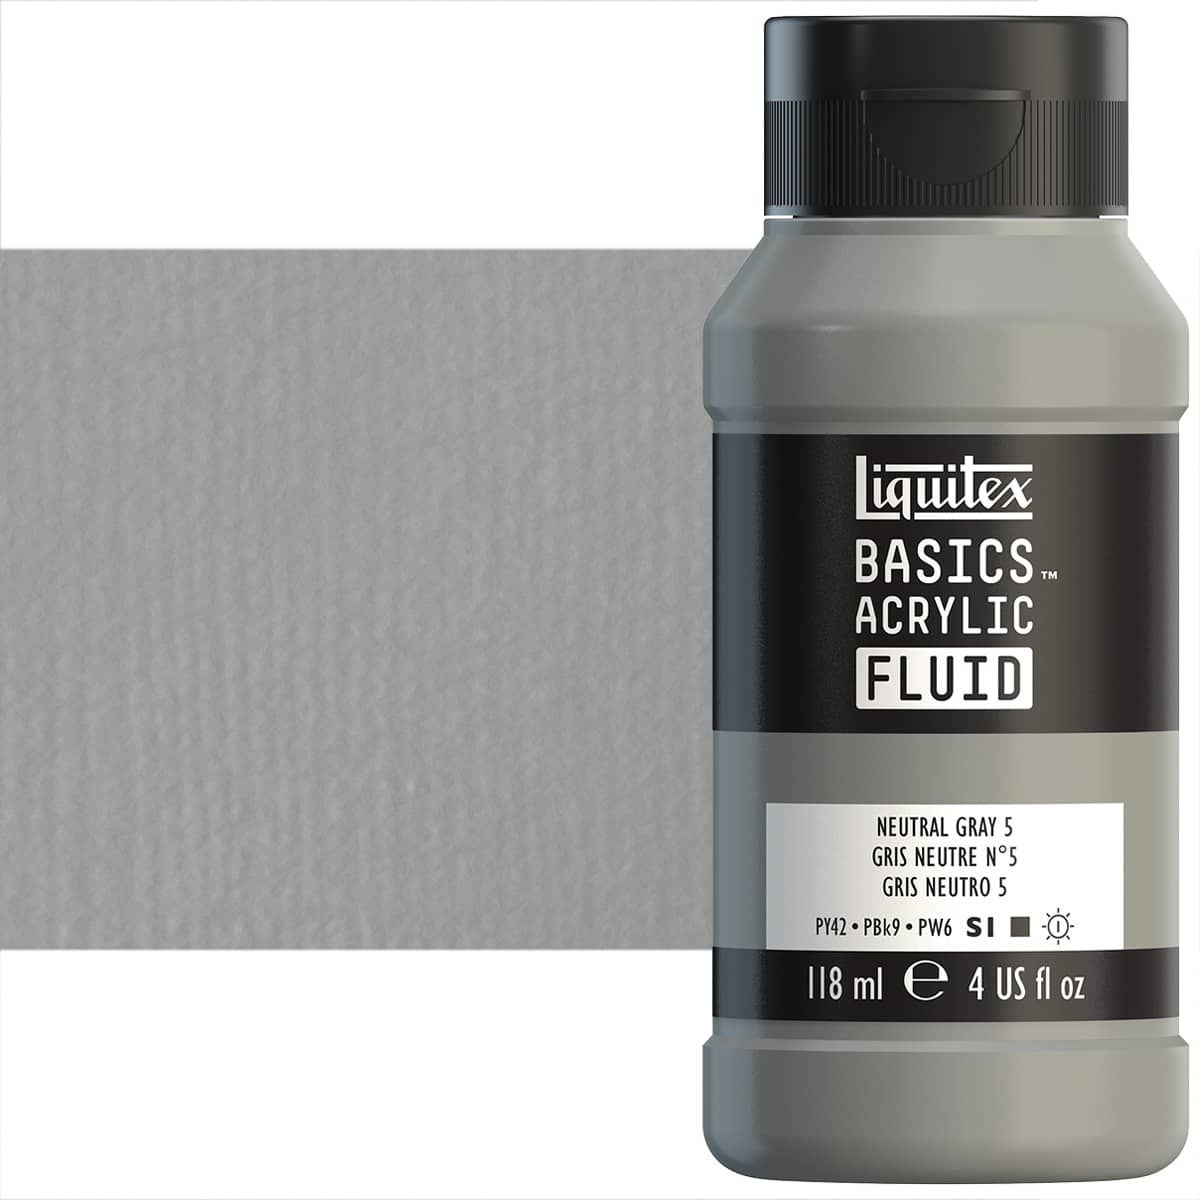 Liquitex BASICS Acrylic Fluid - Titanium White, 4oz Bottle